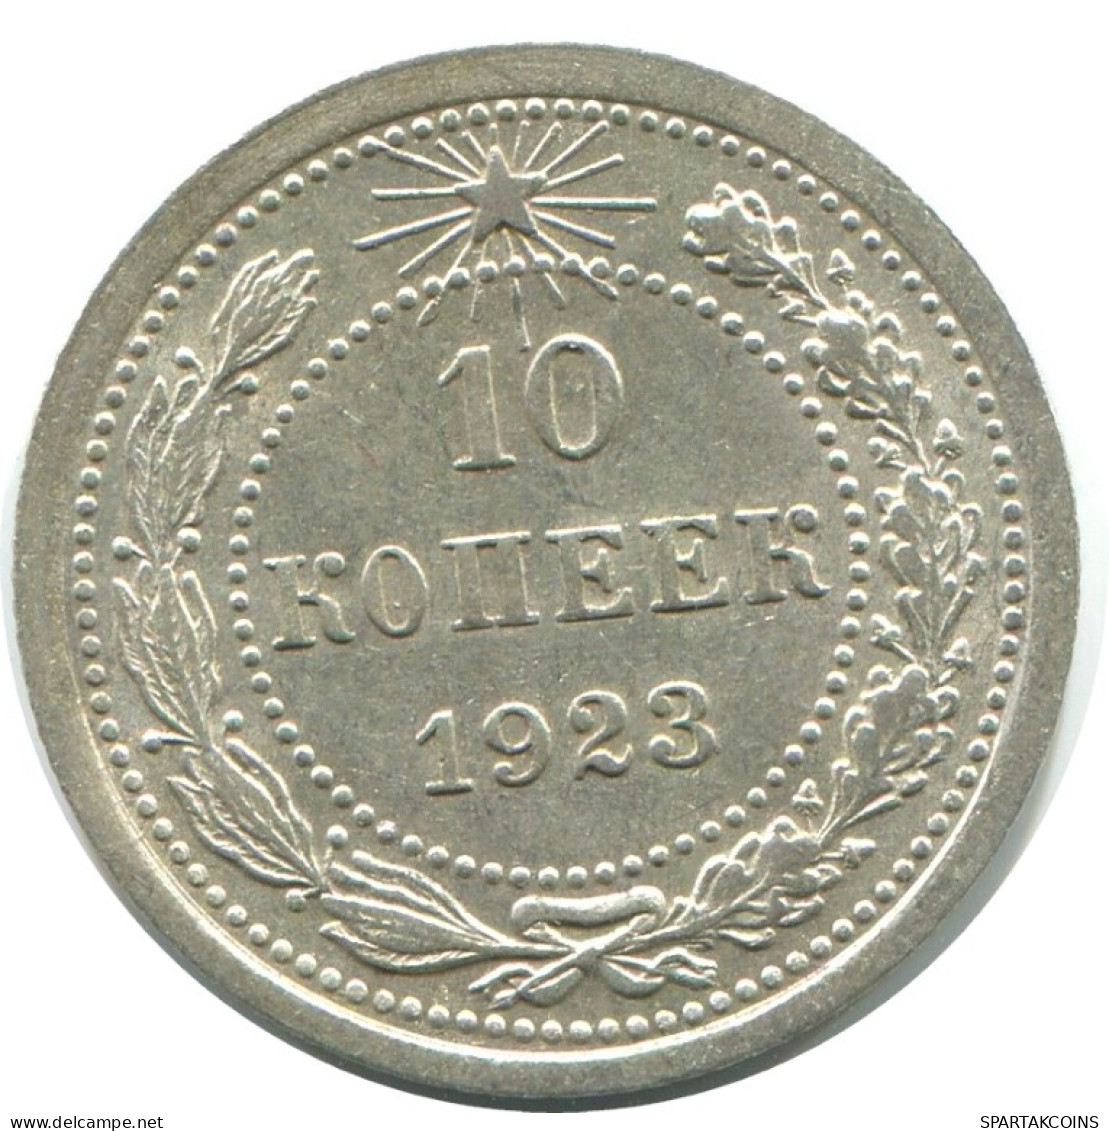 10 KOPEKS 1923 RUSSLAND RUSSIA RSFSR SILBER Münze HIGH GRADE #AE968.4.D.A - Russland